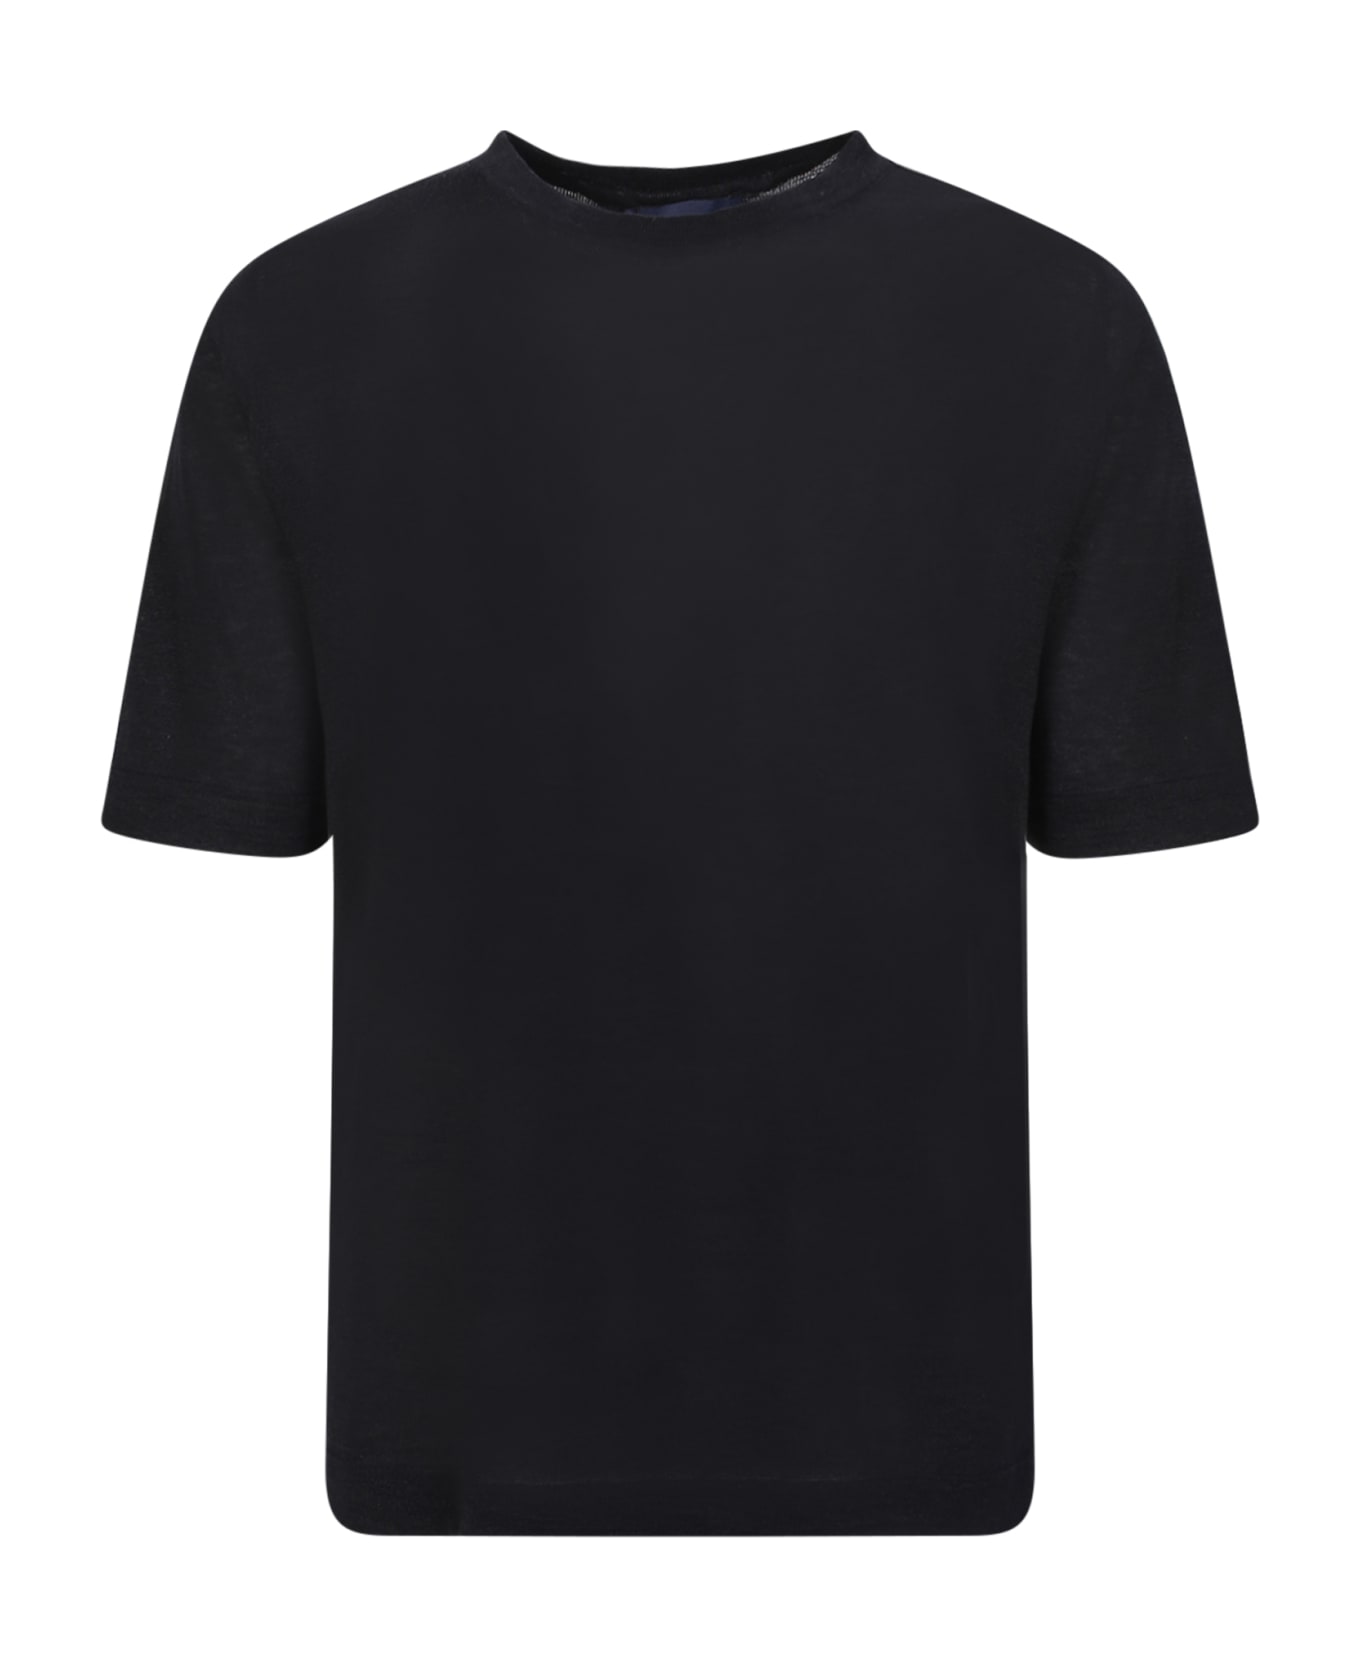 Lardini Linen And Cotton Blend Black T-shirt - Black